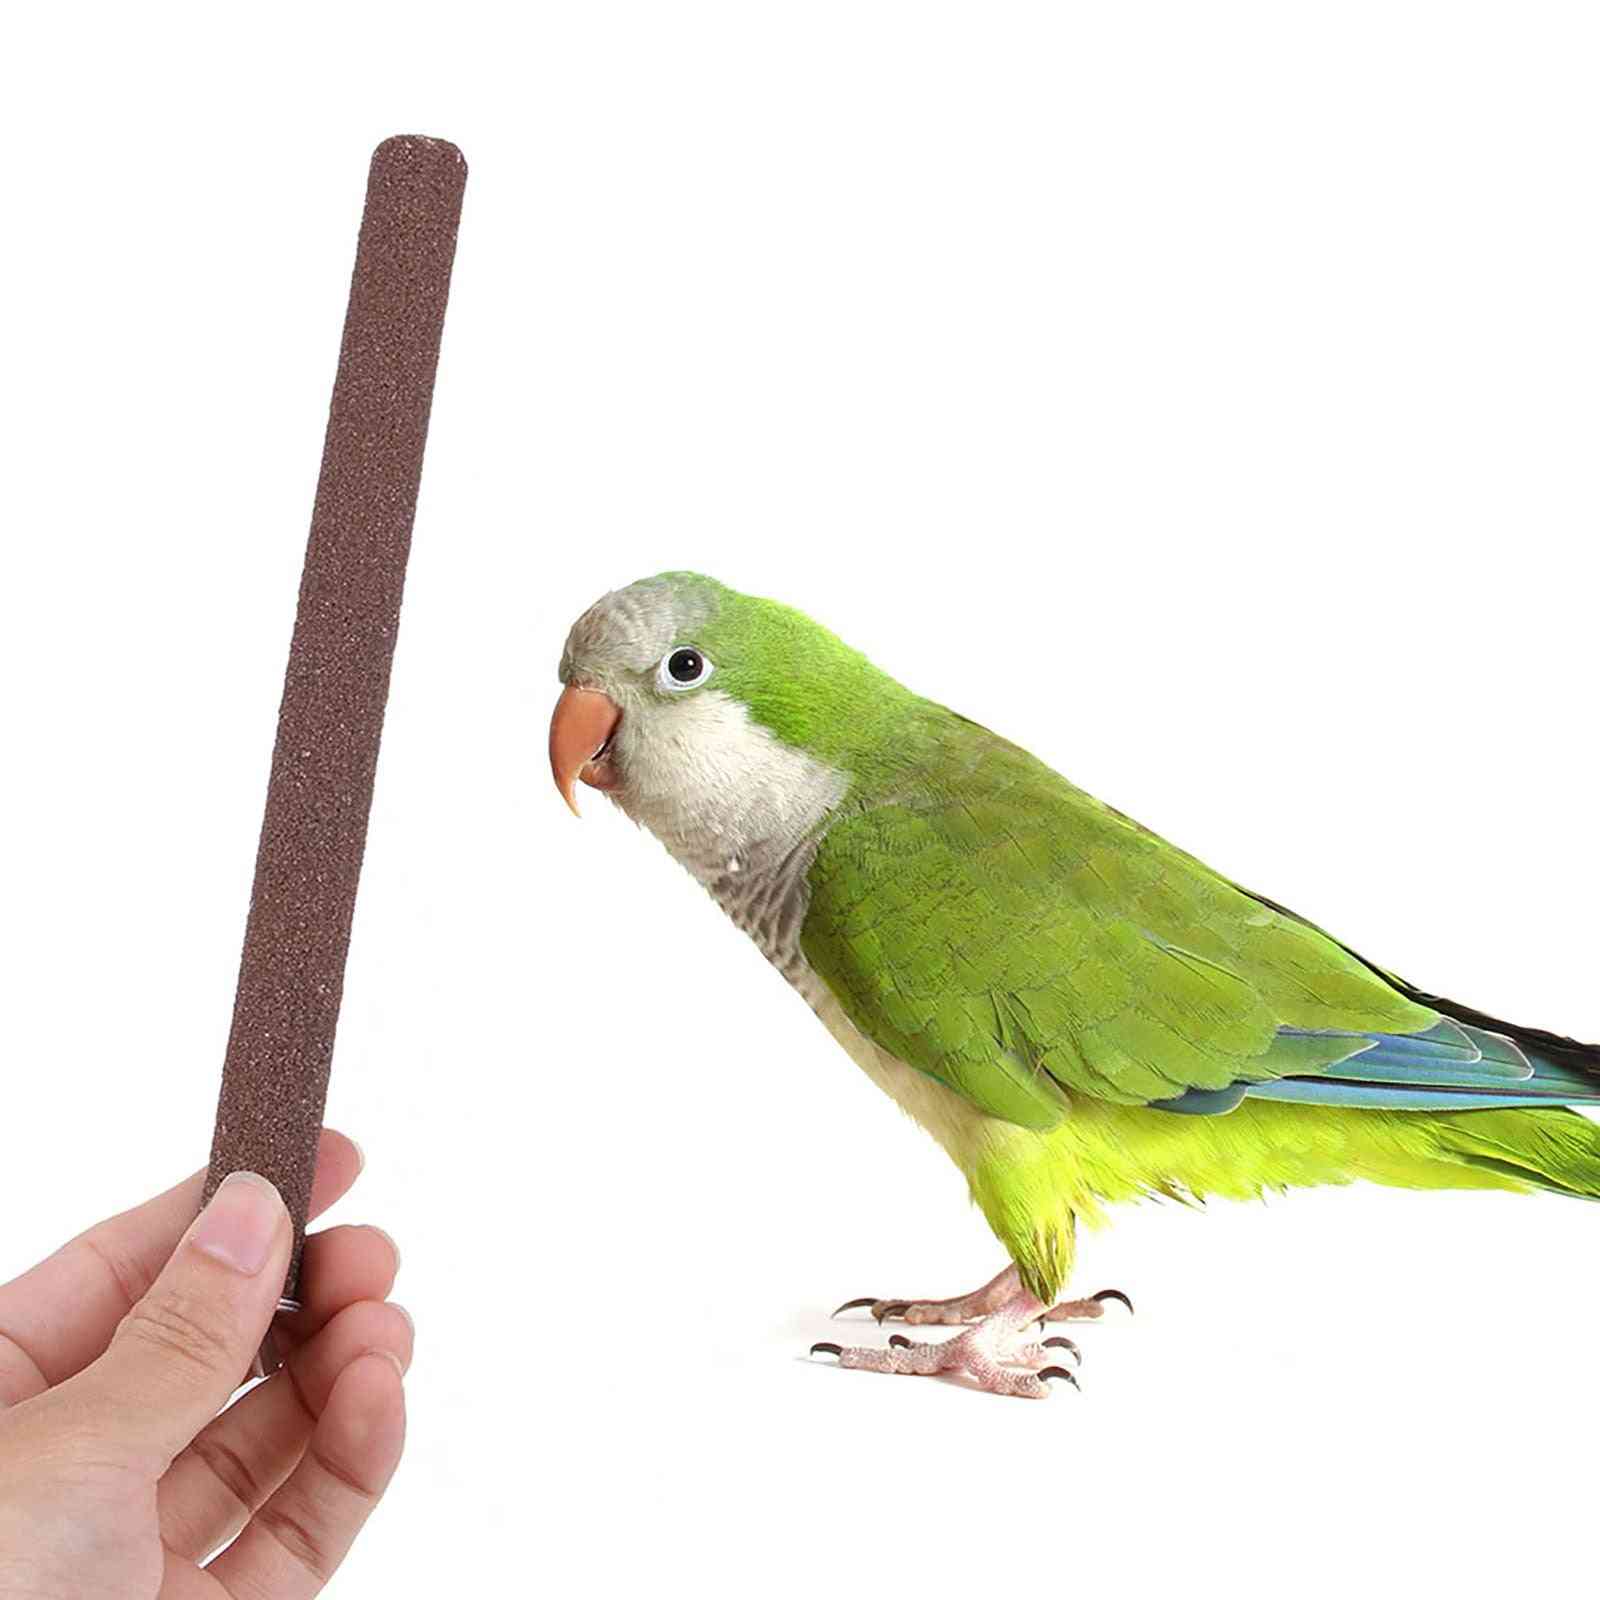 птица папагал костур стойка държач - шлайфане нокът домашен любимец клетка платформа аксесоари дъвчете играчка птица доставки